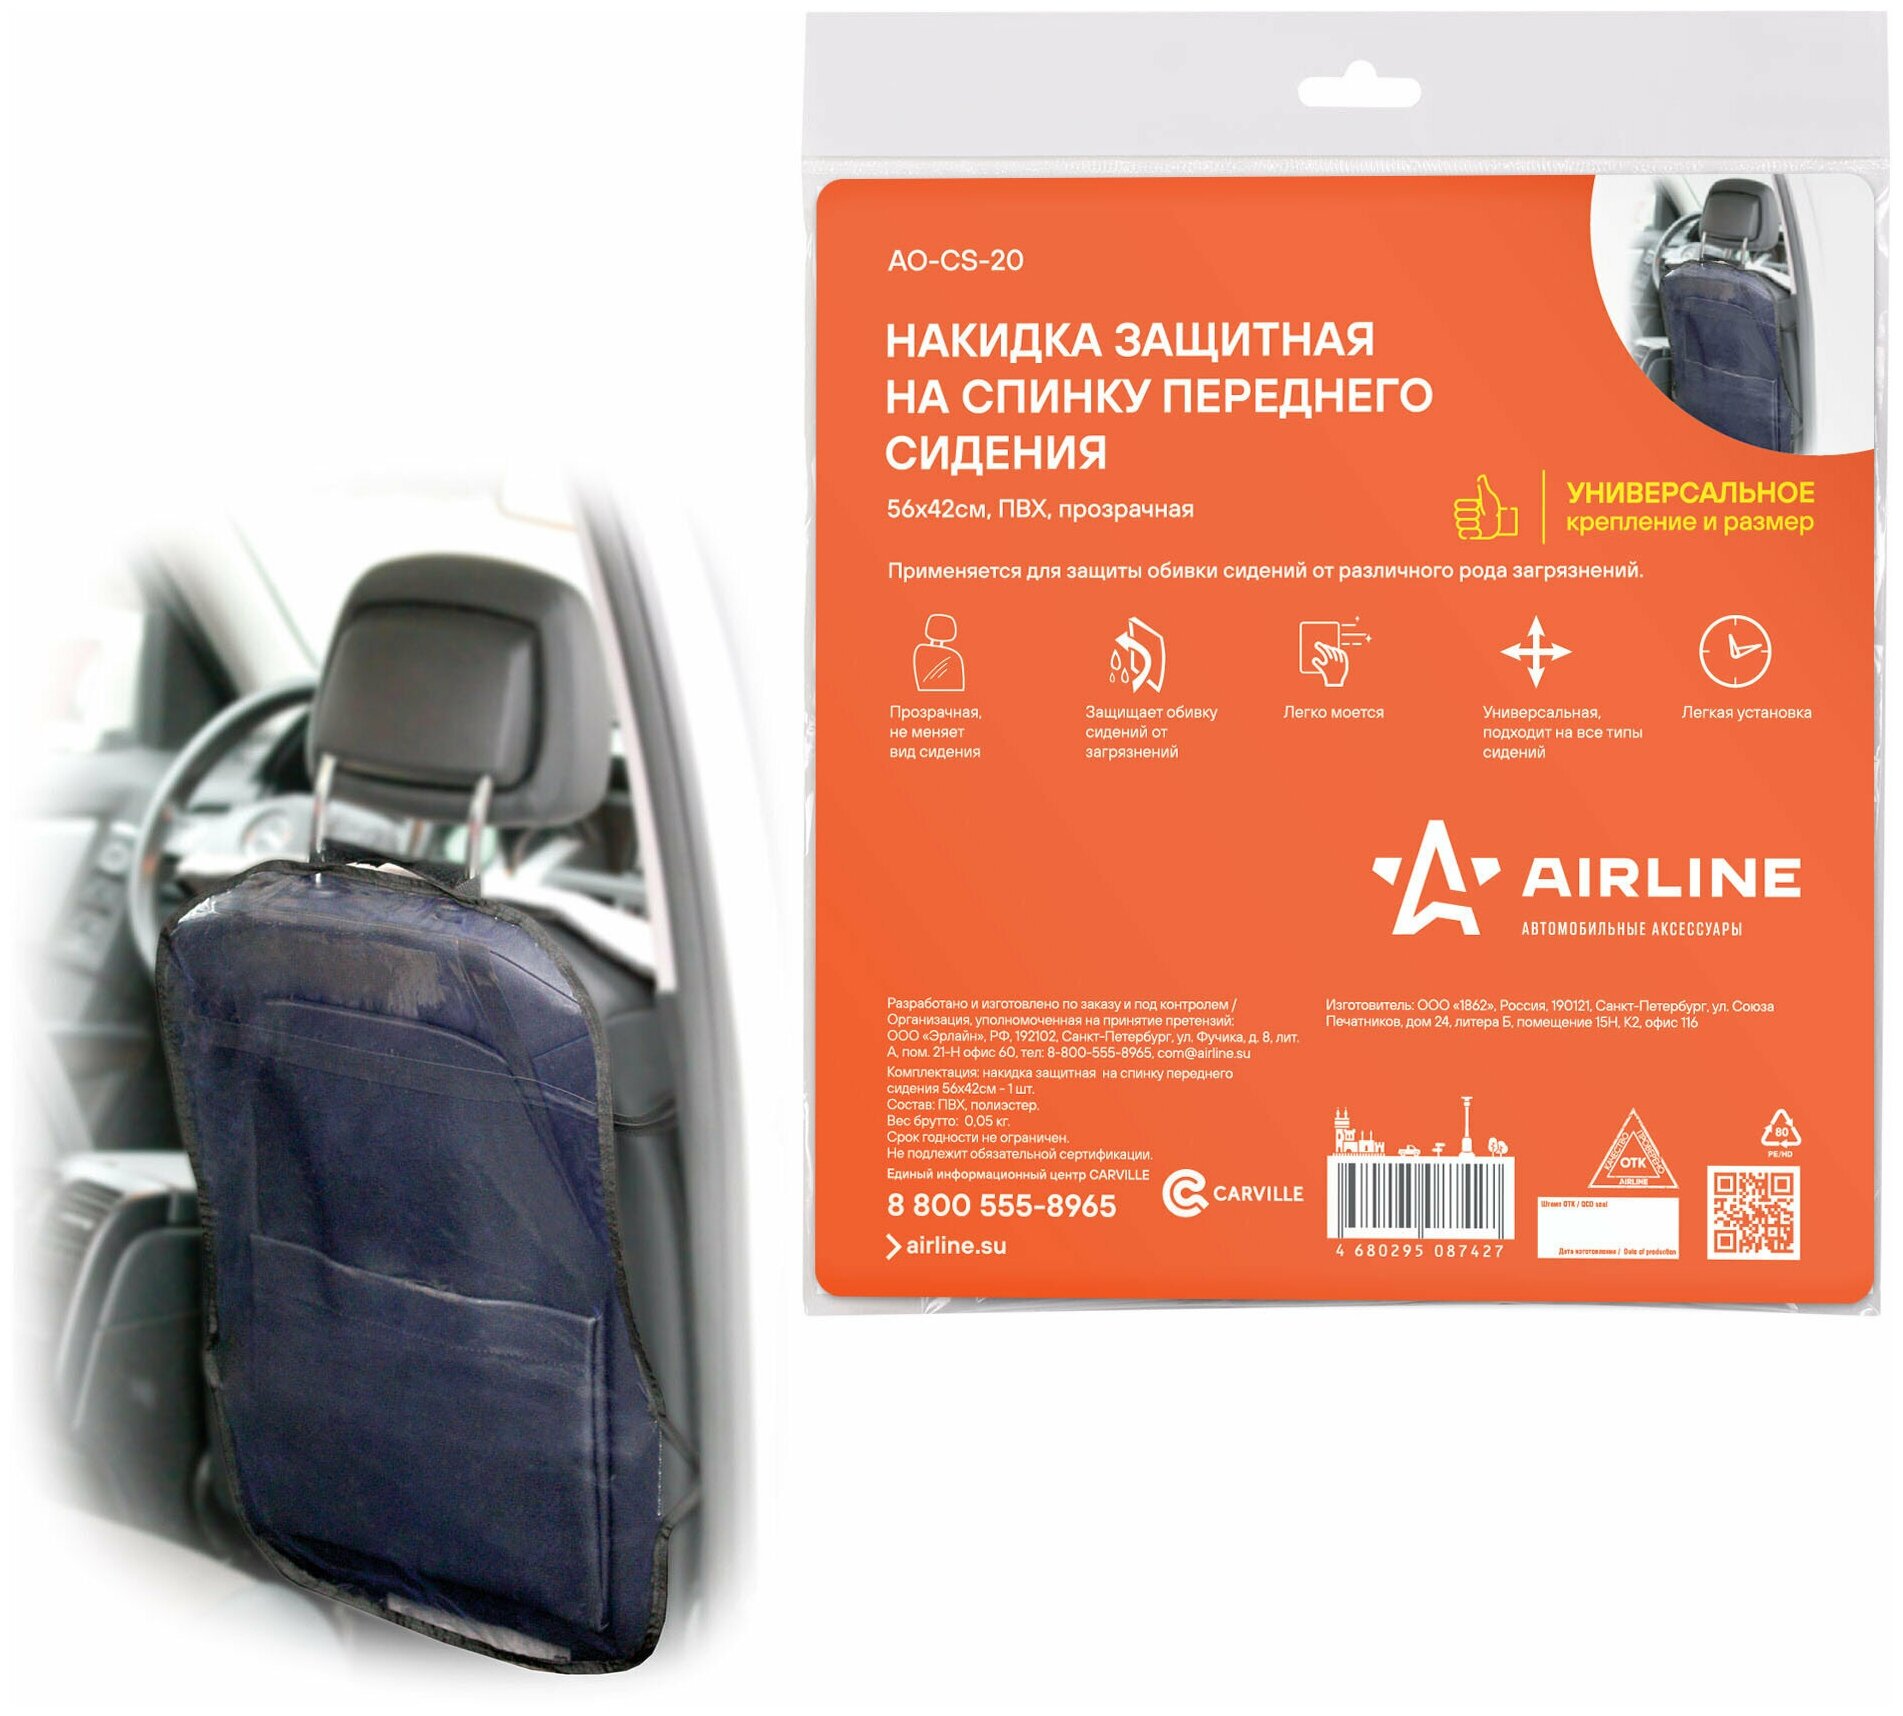 Накидка защитная на спинку переднего сидения Airline (56*42 см) прозрачная (AO-CS-20)